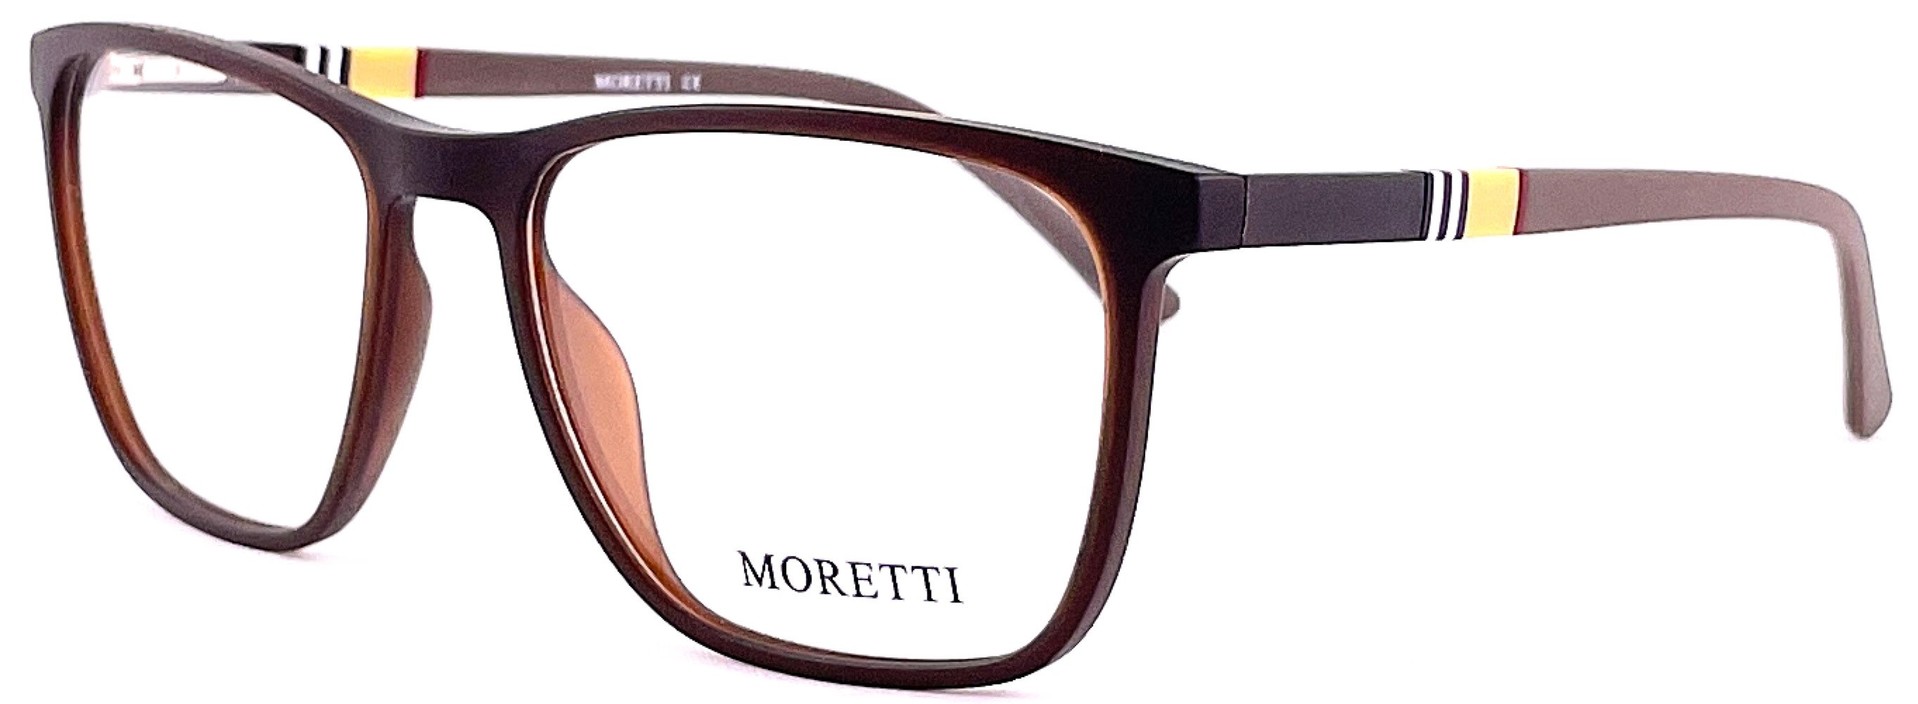 Moretti MF03-05 C.03 2